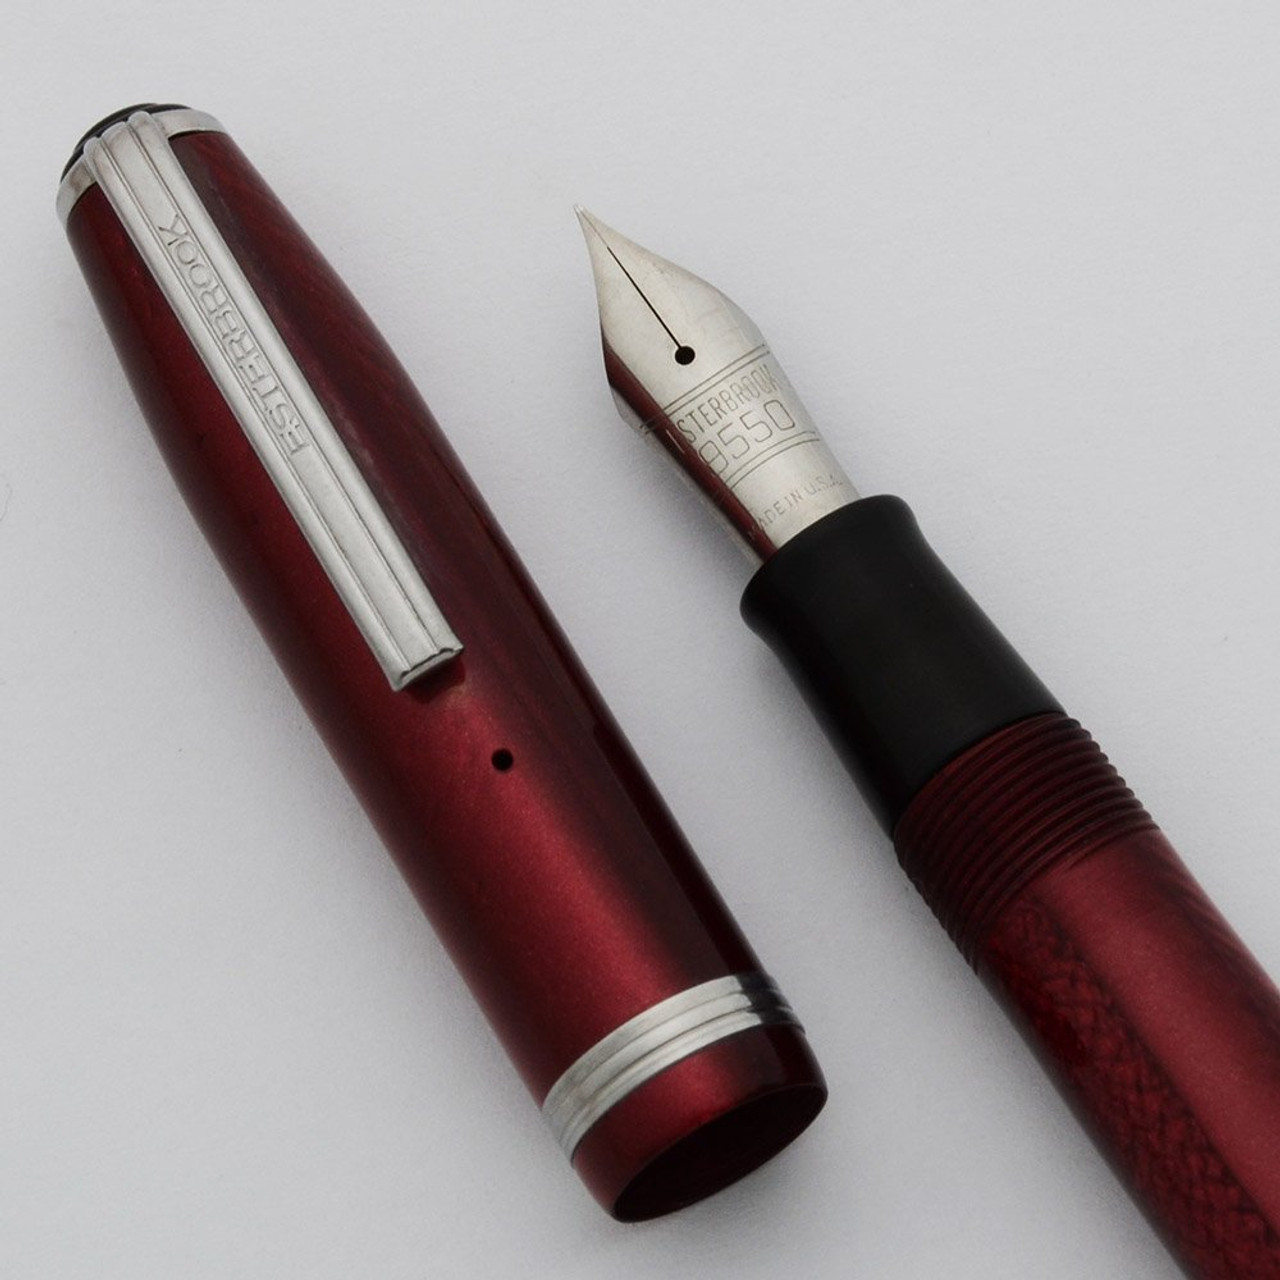 Esterbrook SJ Fountain Pen - Dubonnet Red, 9550 Firm Extra Fine Nib (Excellent, Restored)